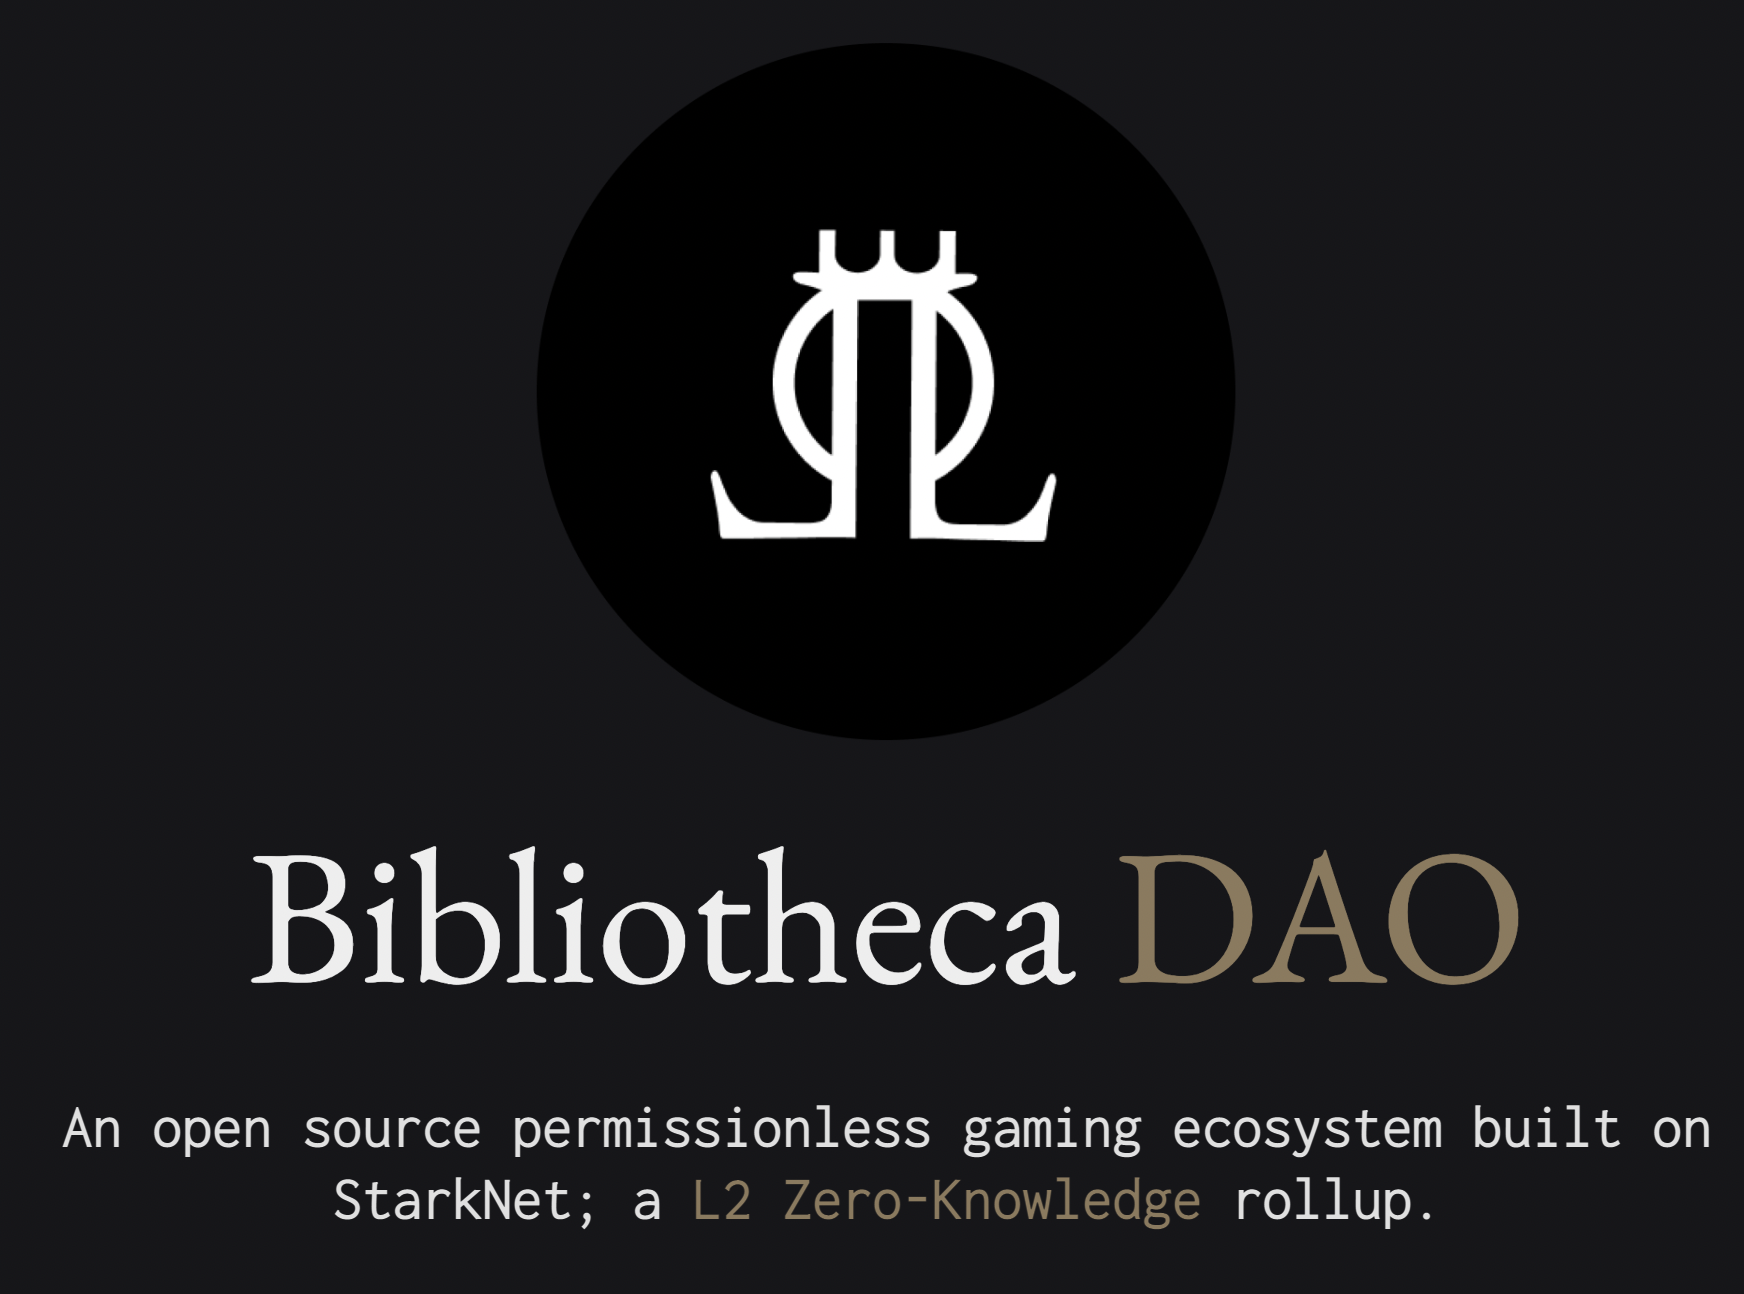 StarkNet üzerine kurulu açık kaynaklı bir oyun ekosistemi DAO'su.